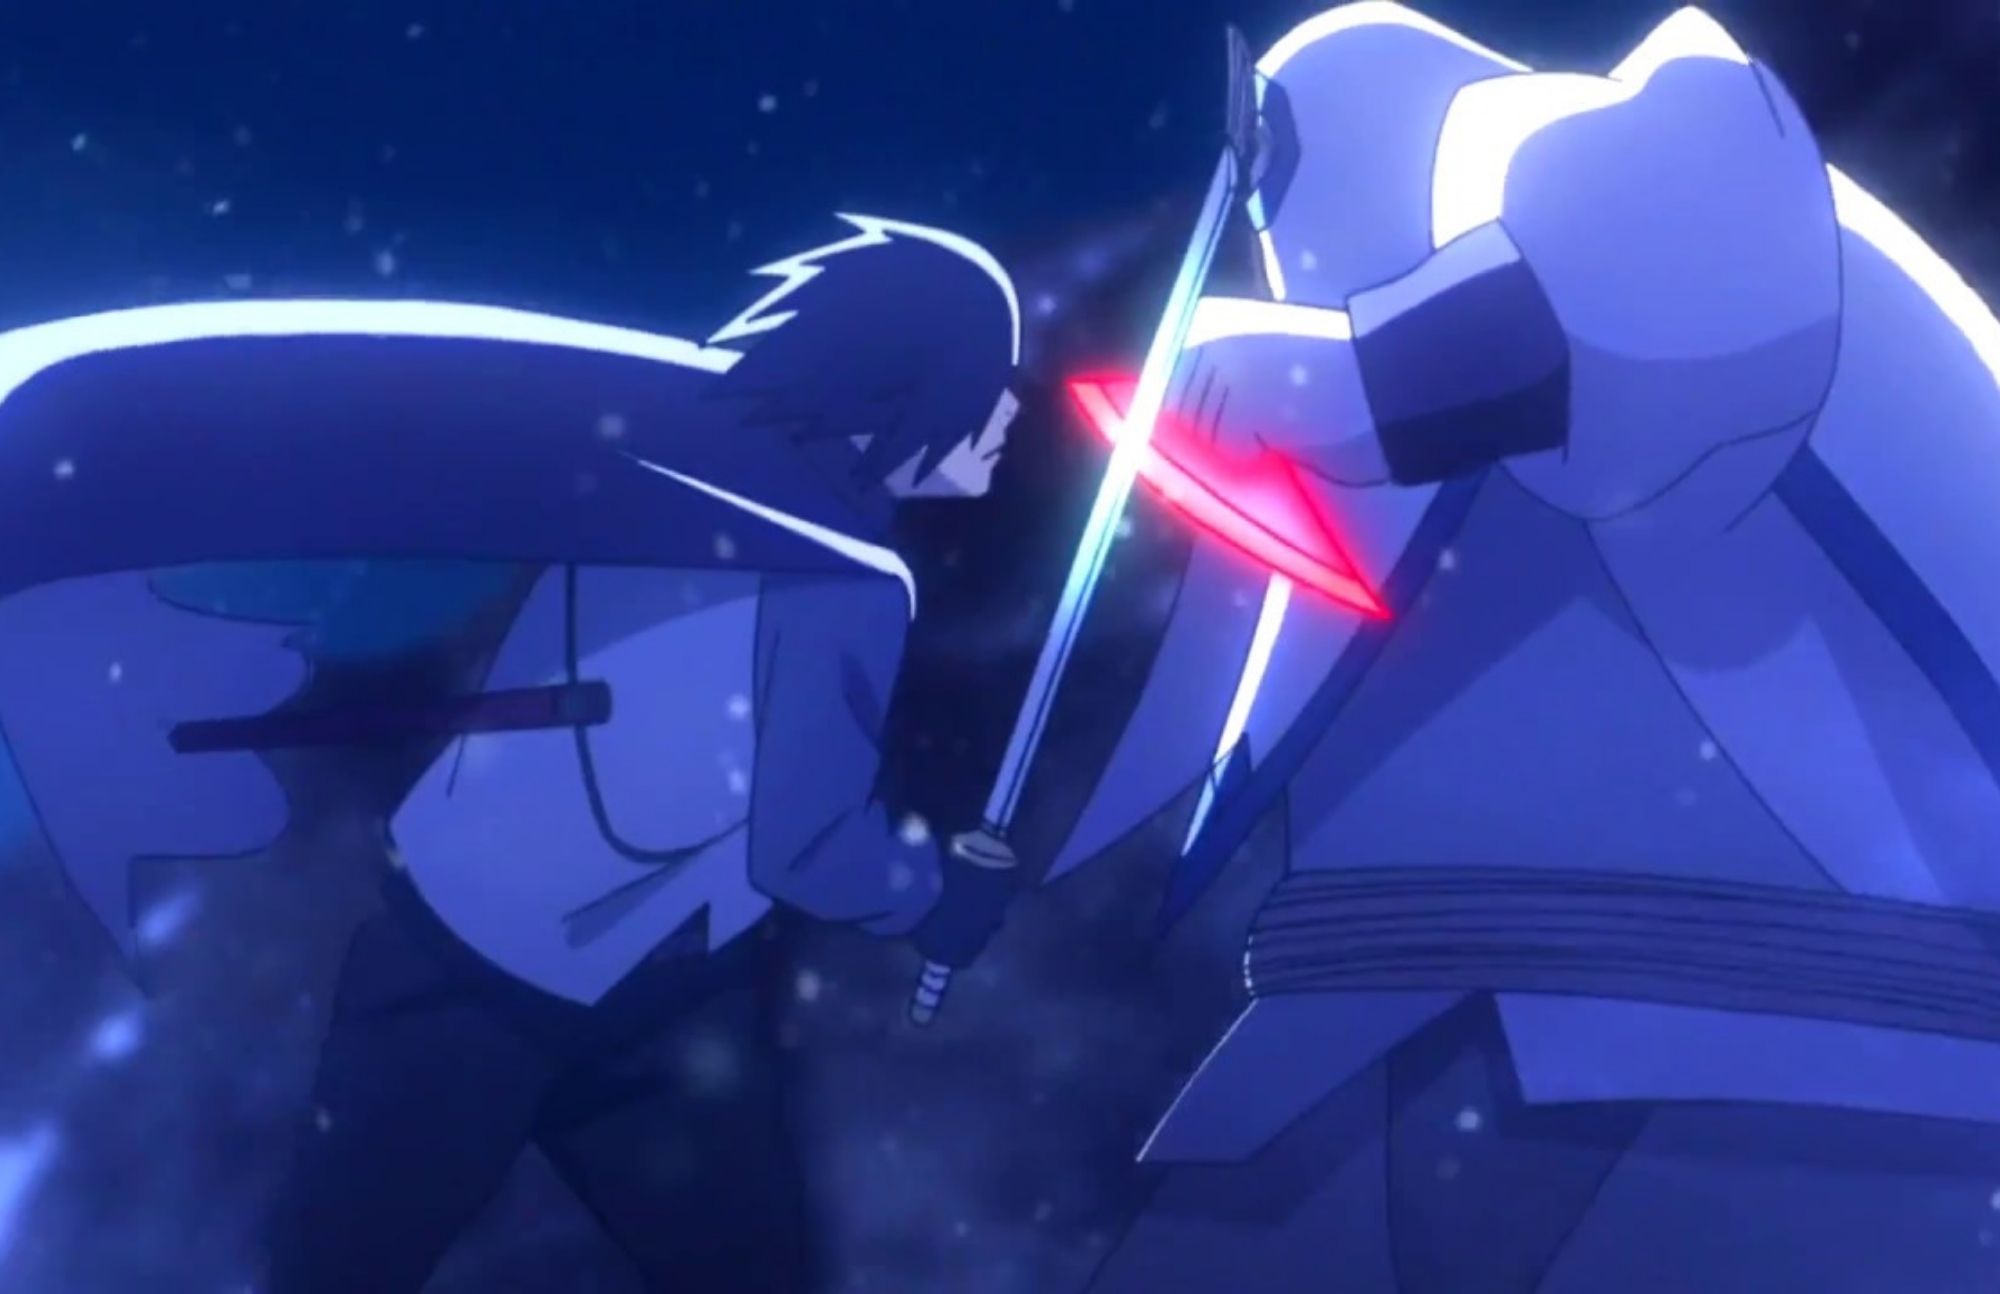 Sasuke attacks Kinshiki Tsutsuki with his swordmanship skills, while his opponent uses a sharp metal blade